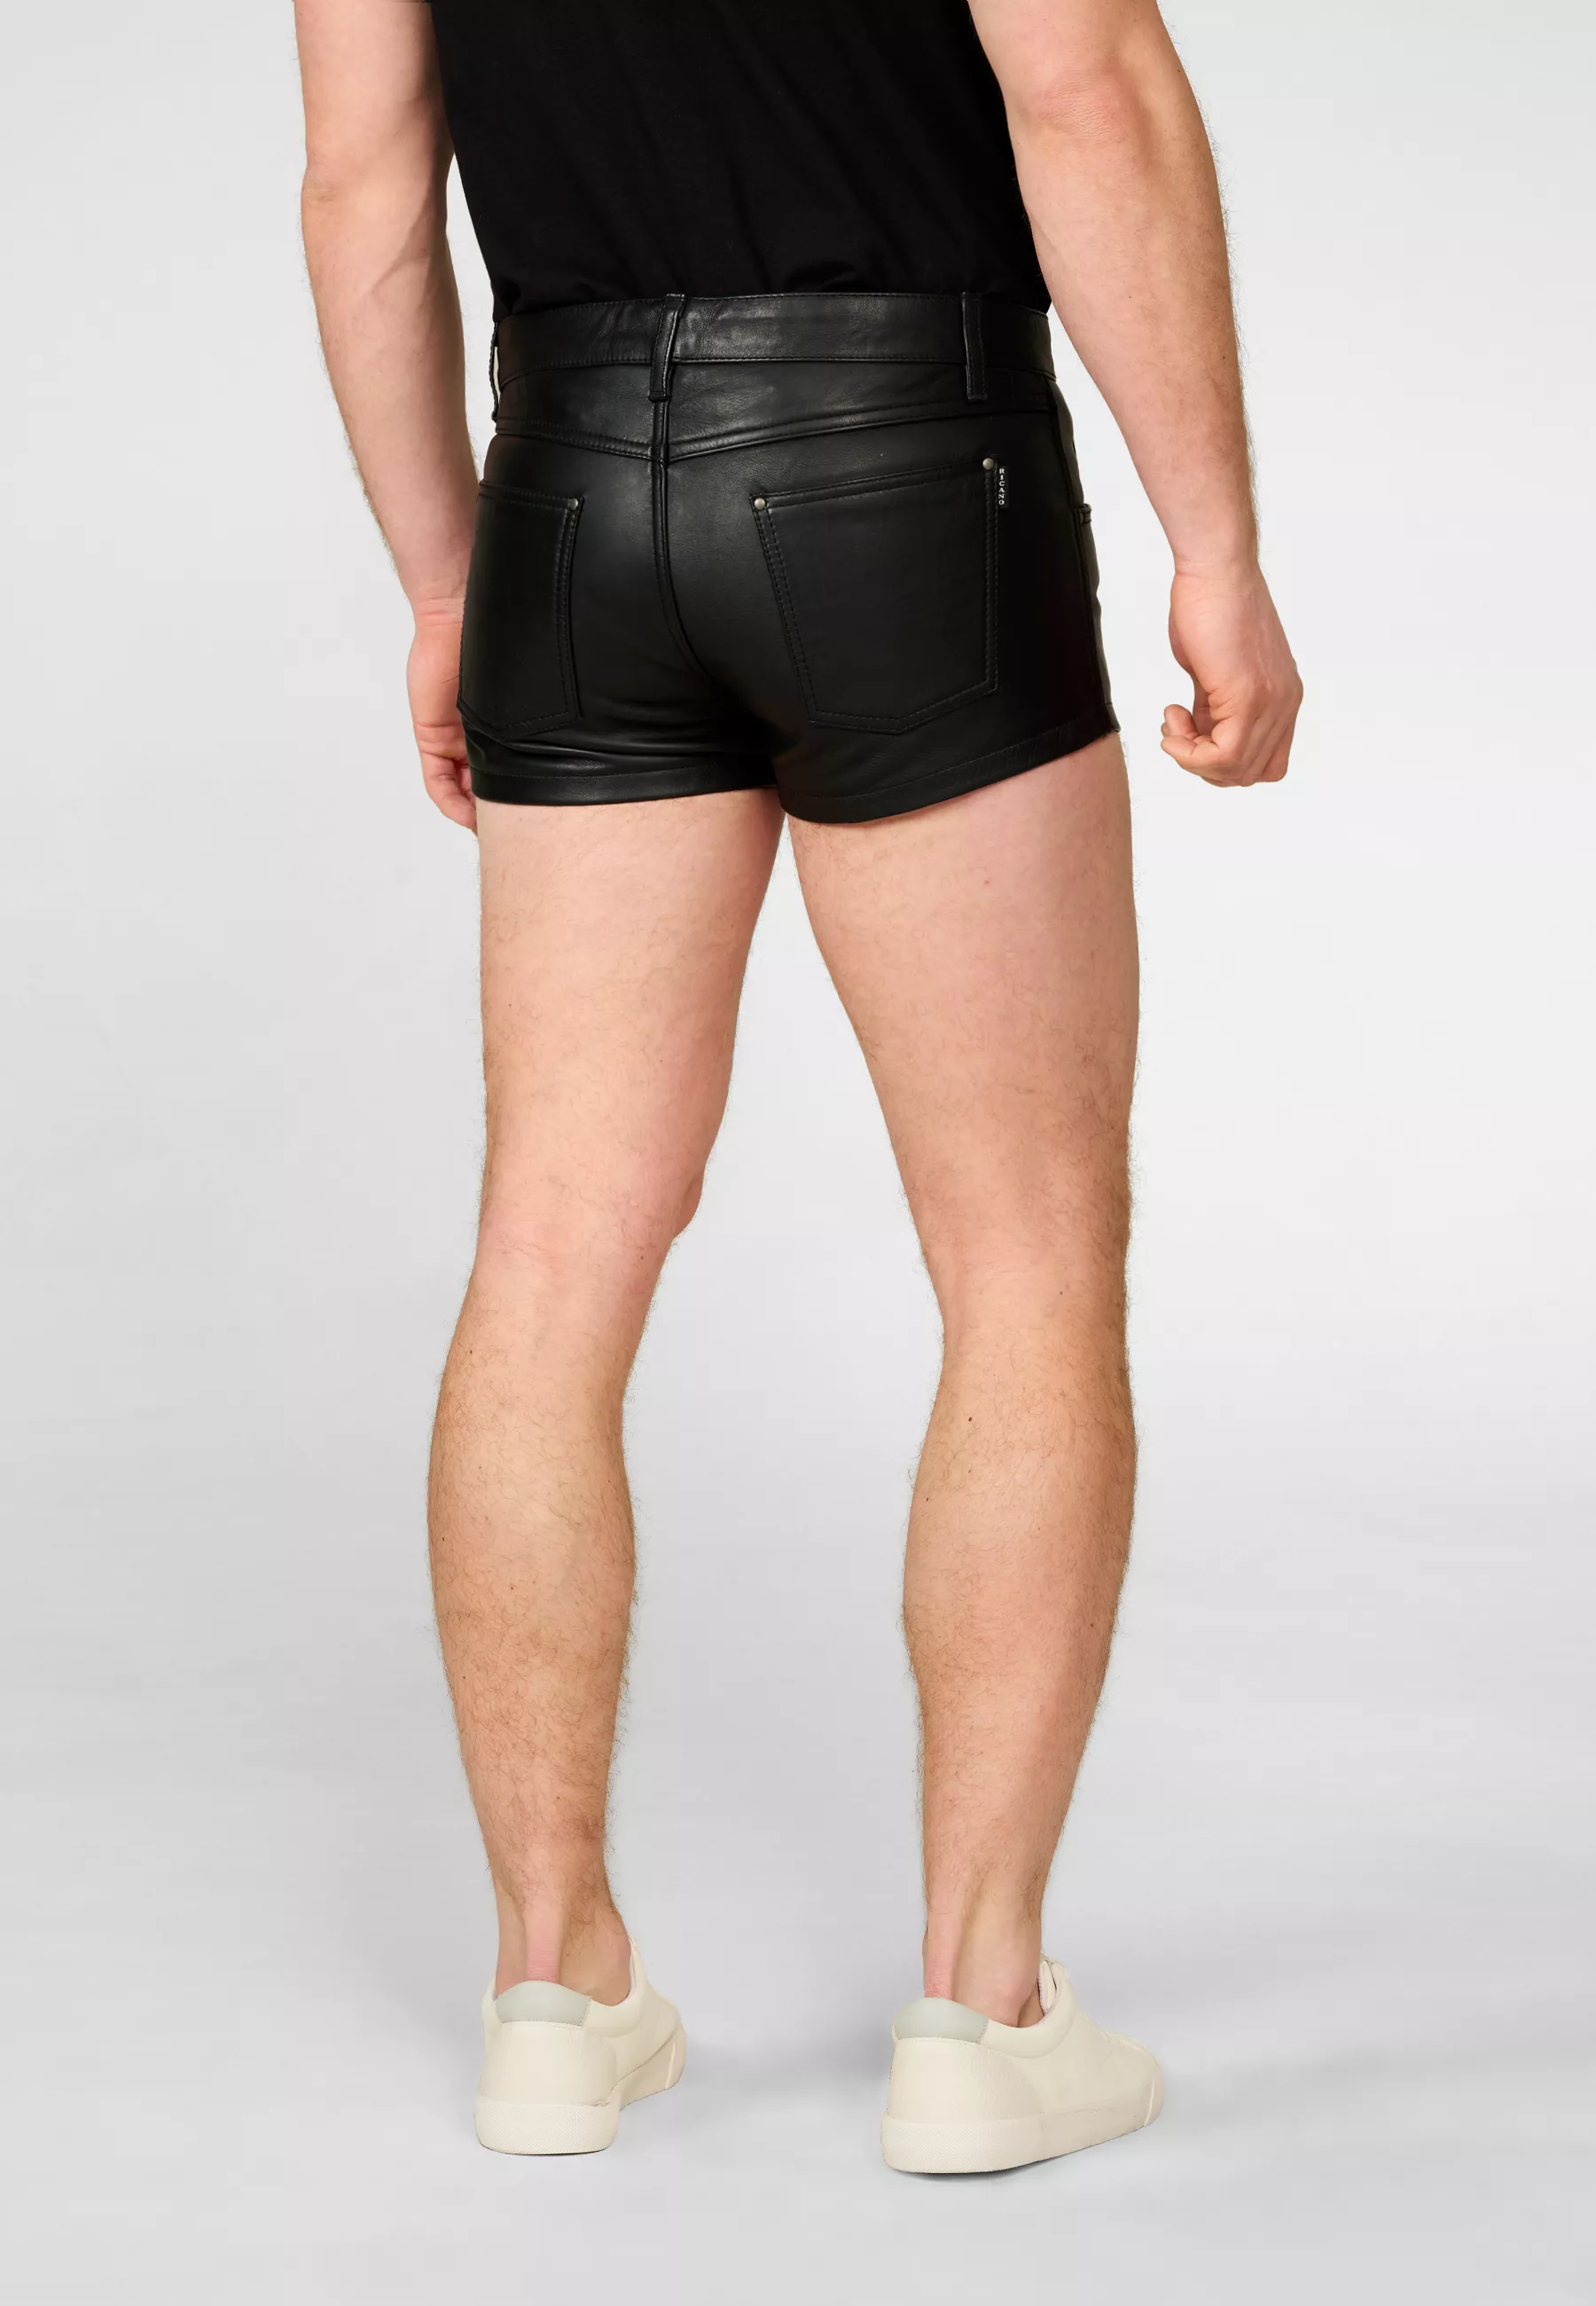 Herren Lederhose Shorts in Schwarz von Ricano, Rückansicht am Model